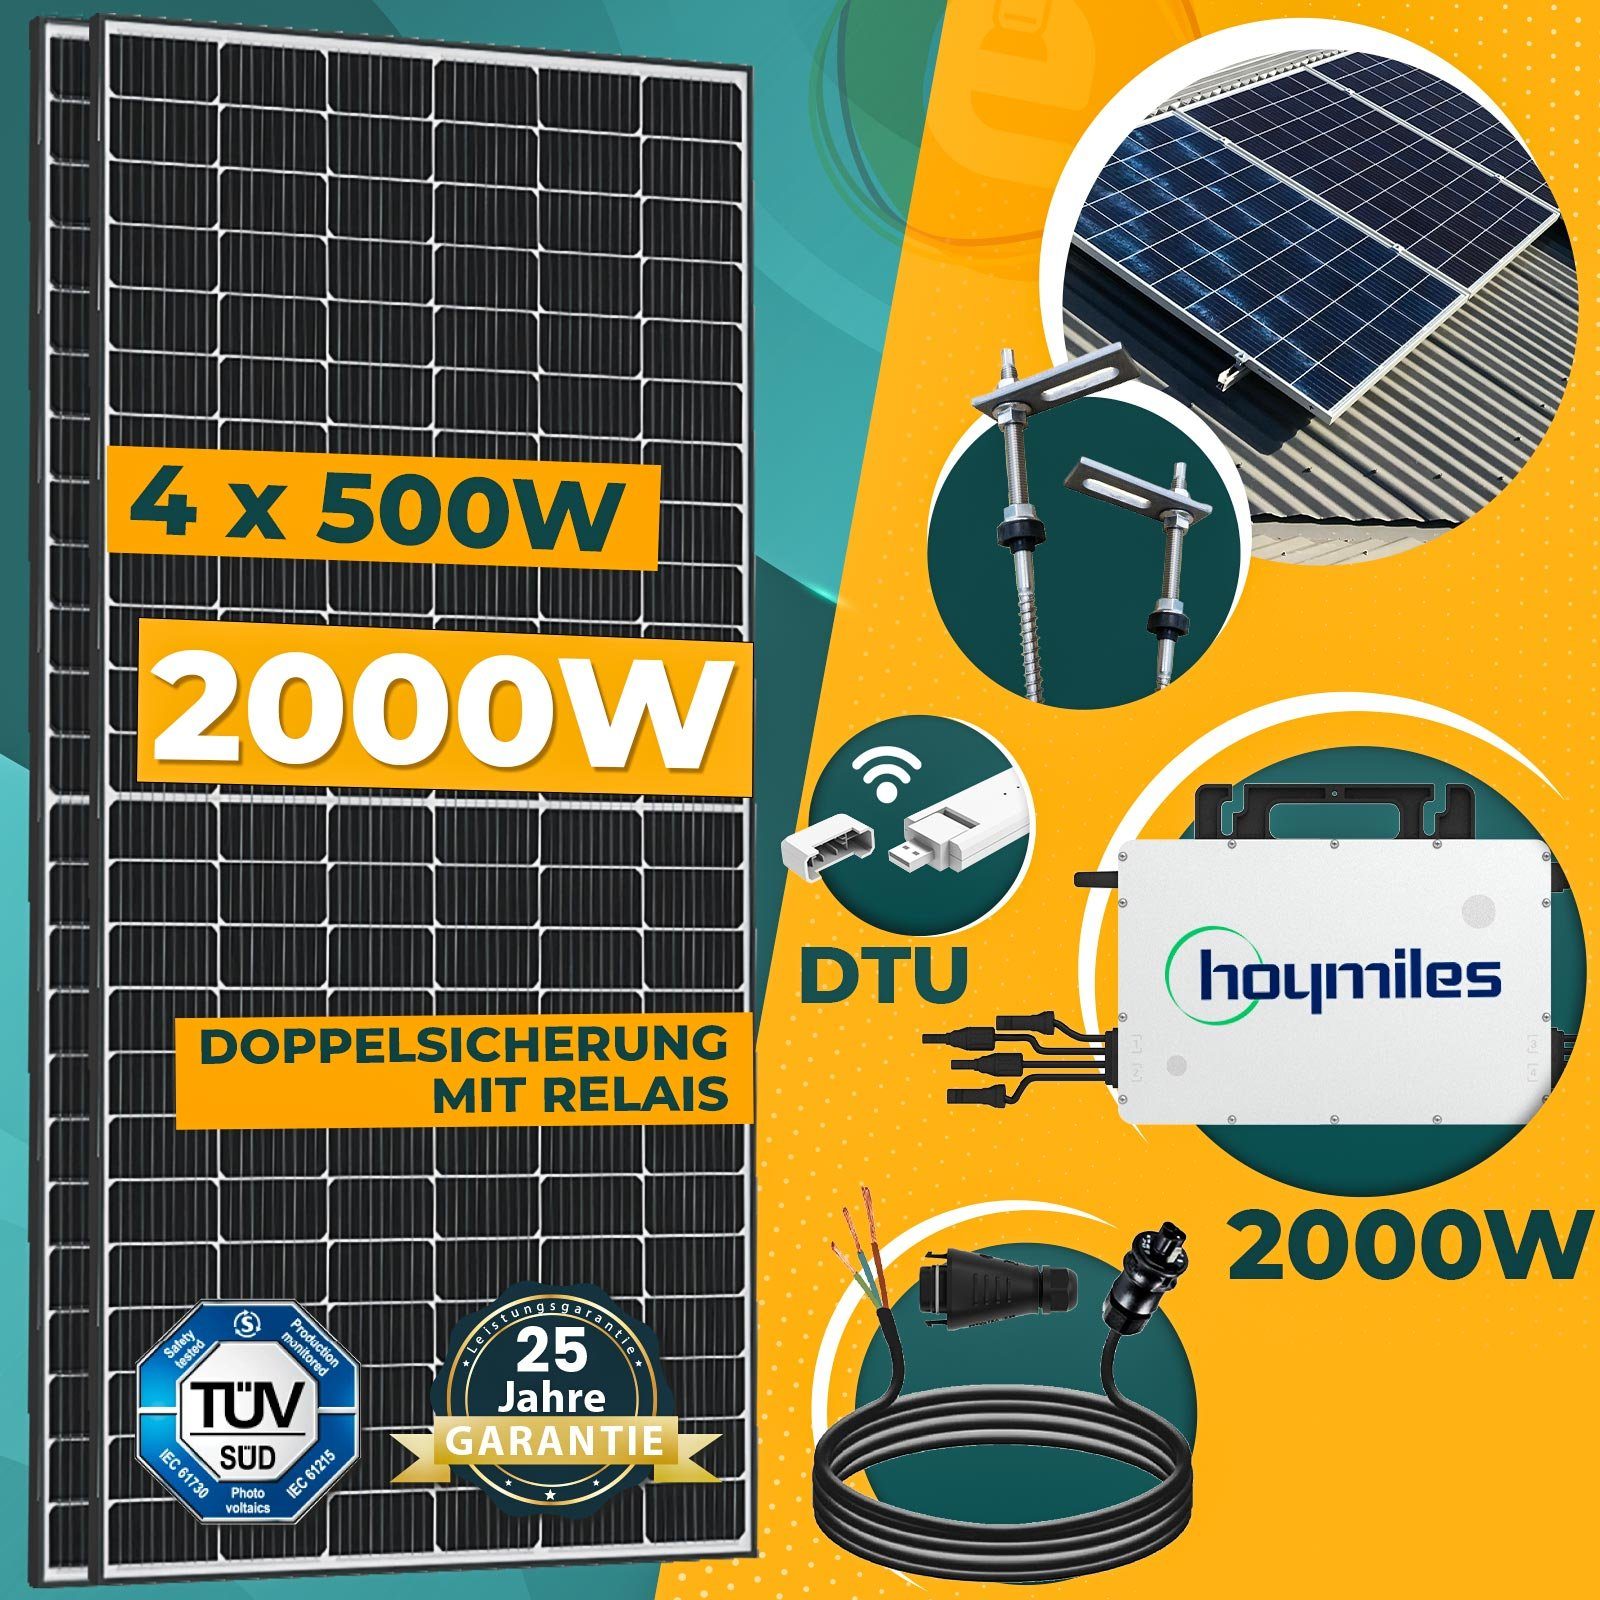 1600W Photovoltaik Balkonkraftwerk mit Sunpro 400W Solarmodule, Hoymiles  HMS-1600-4T Wechselrichter und 10m Wielandstecker